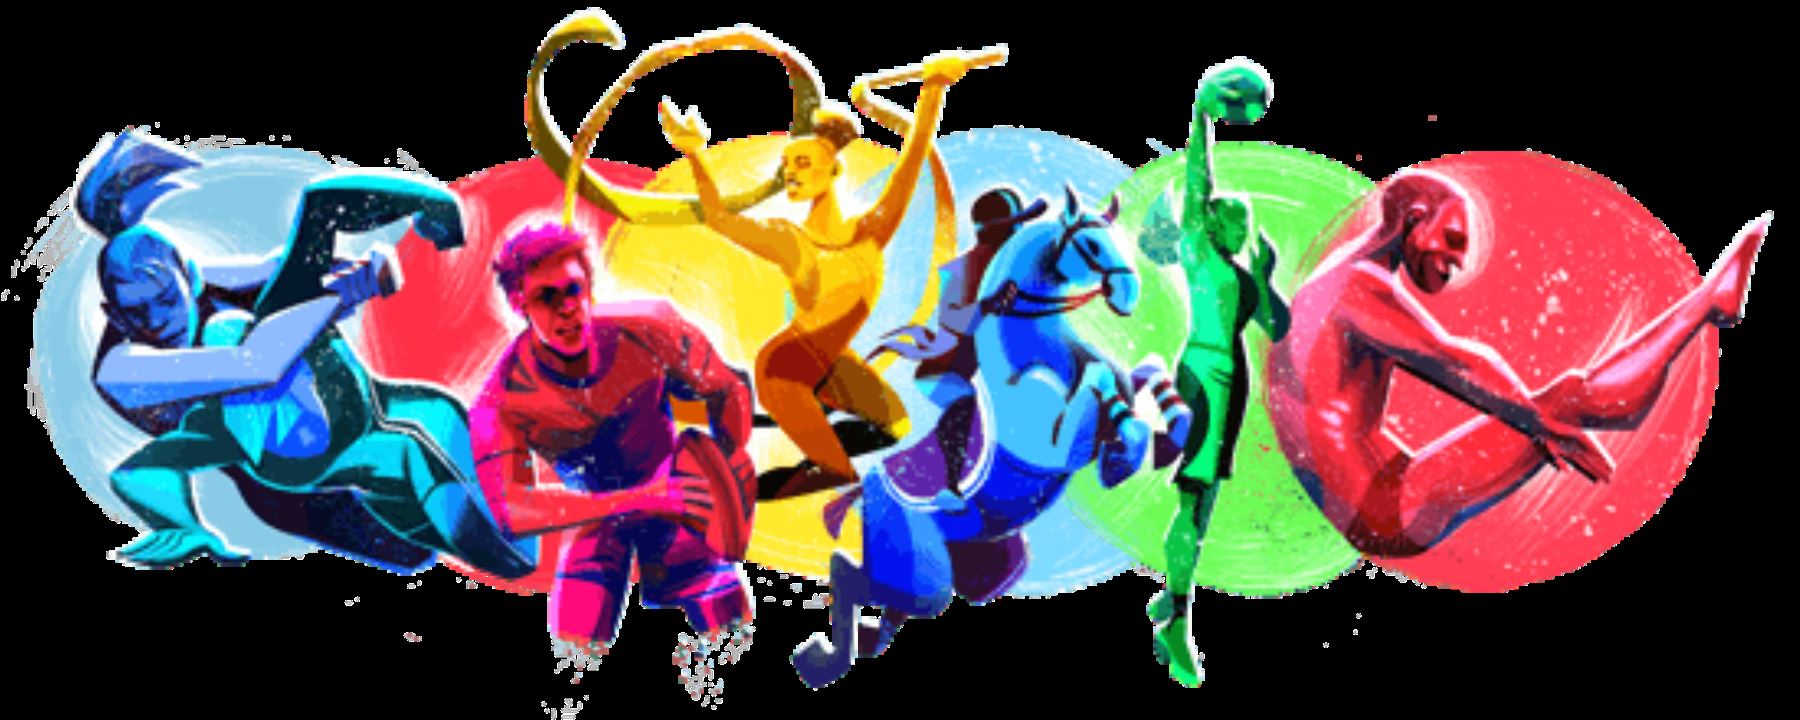 Google publica doodle alusivo a los Juegos Panamericanos Lima 2019.